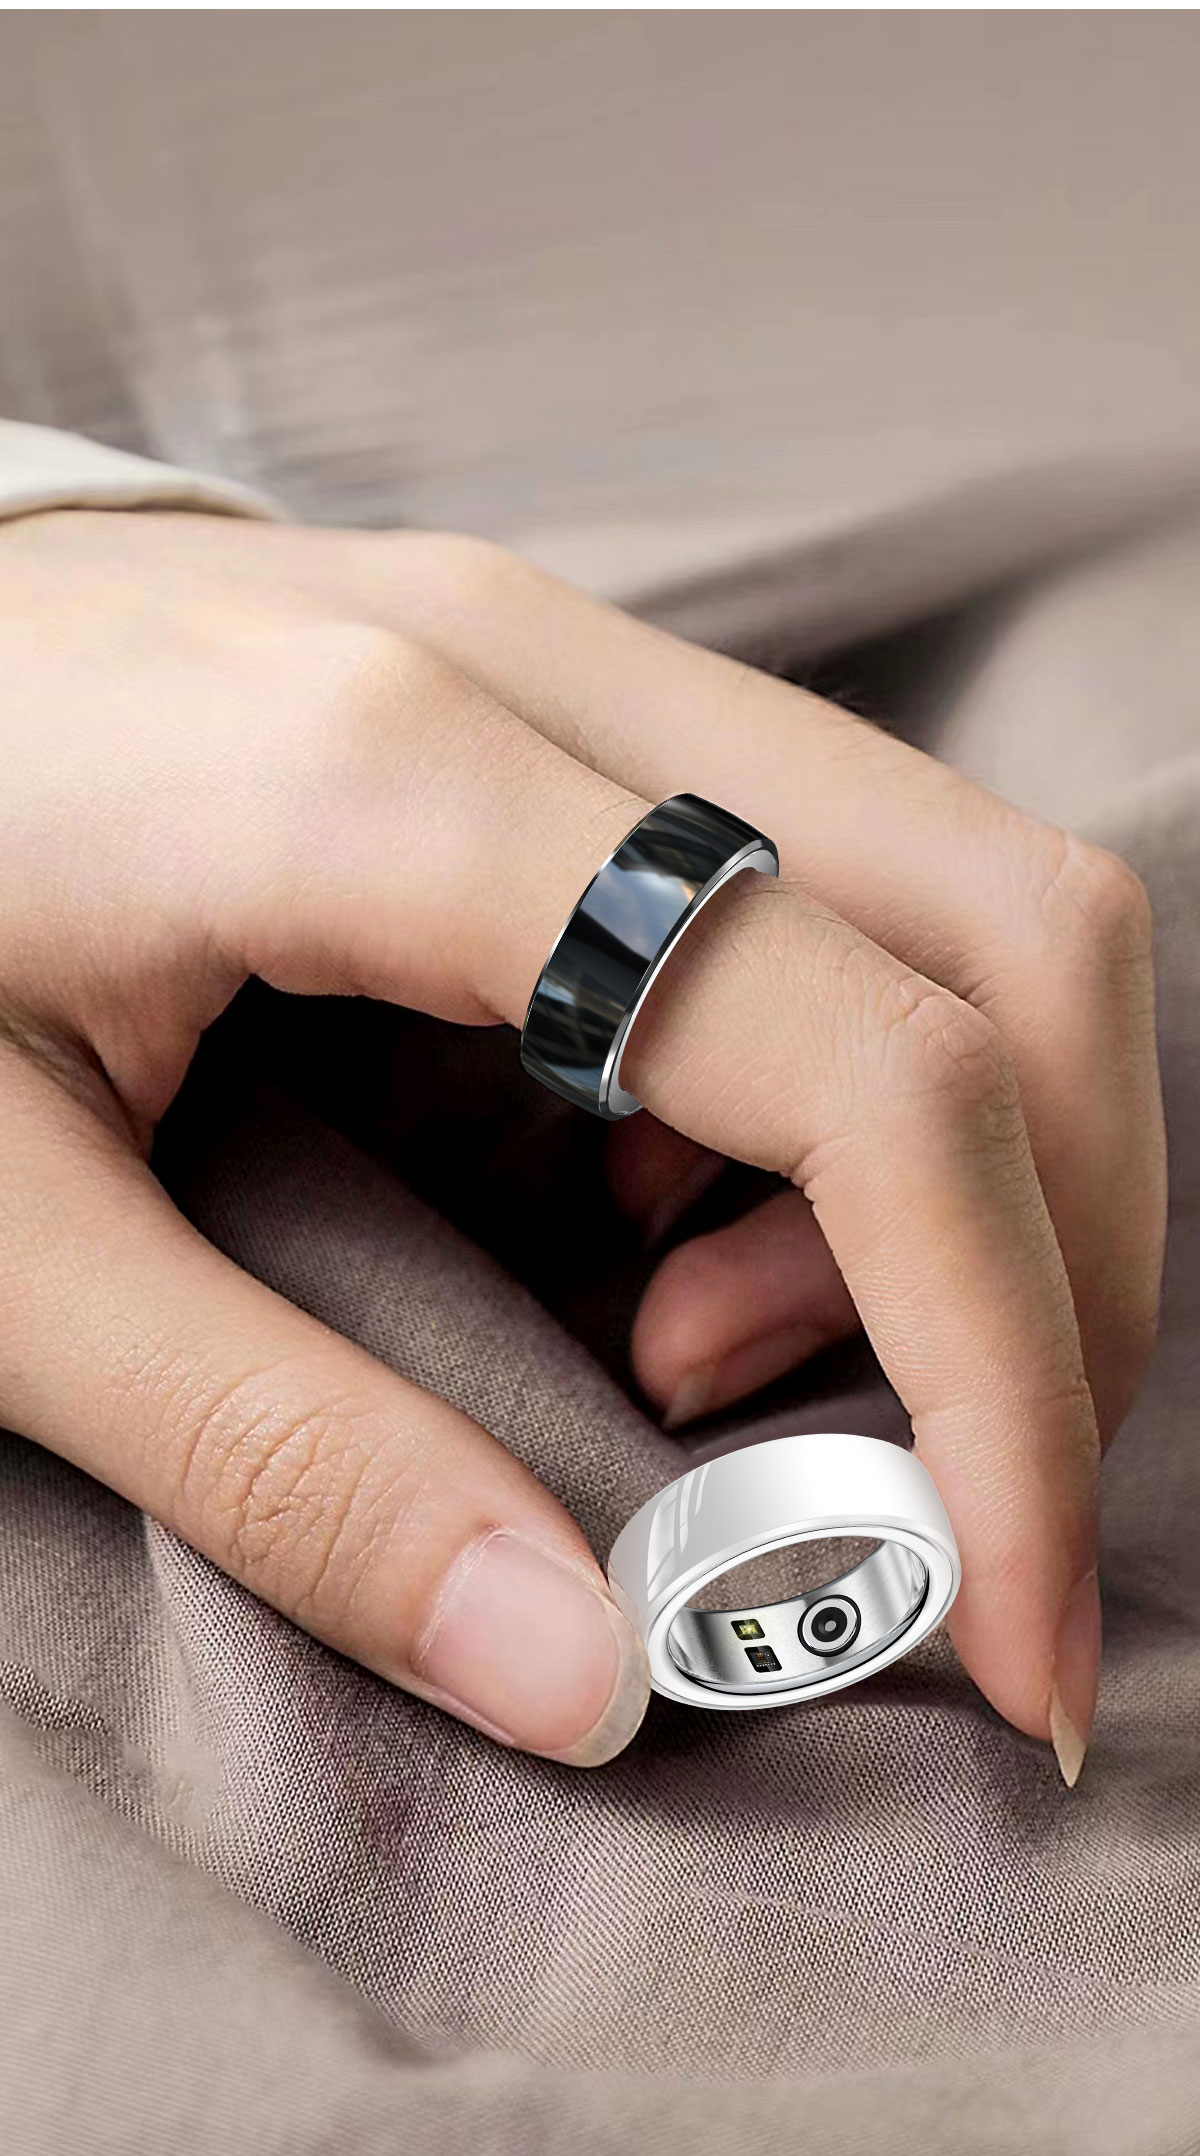  Smart кольцо NFC автоматика оплата расчет функция здоровье управление кровяное давление сделано в Японии сенсор сон осмотр . измеритель пульса монитор шагомер подножка счетчик имеется данные сохранение шт .. кольцо . ограничение отмена 